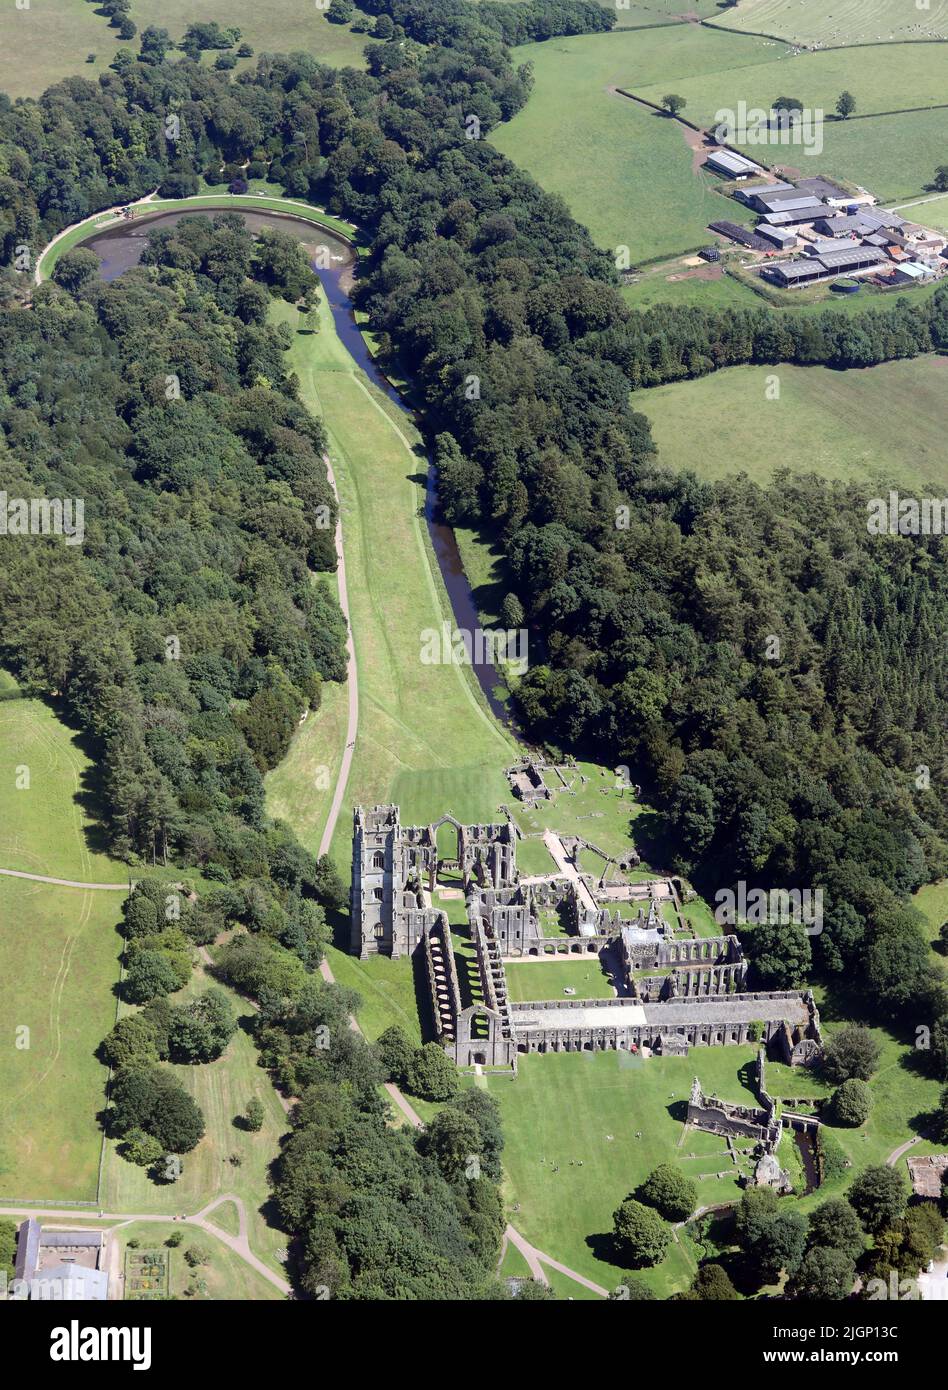 Vista aérea desde más de 1500' de las ruinas monásticas de Fountains Abbey con vistas al este del río Skell, North Yorkshire Foto de stock